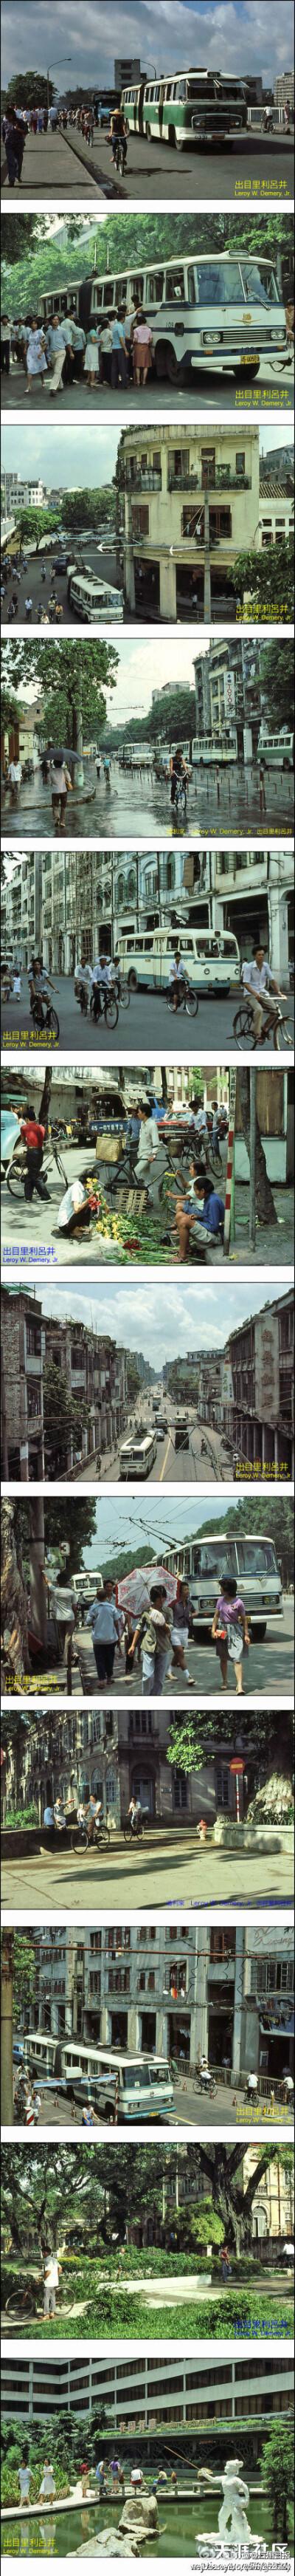 【1983年的广州】很珍贵的老照片,时光倒流30年,恍如隔世.